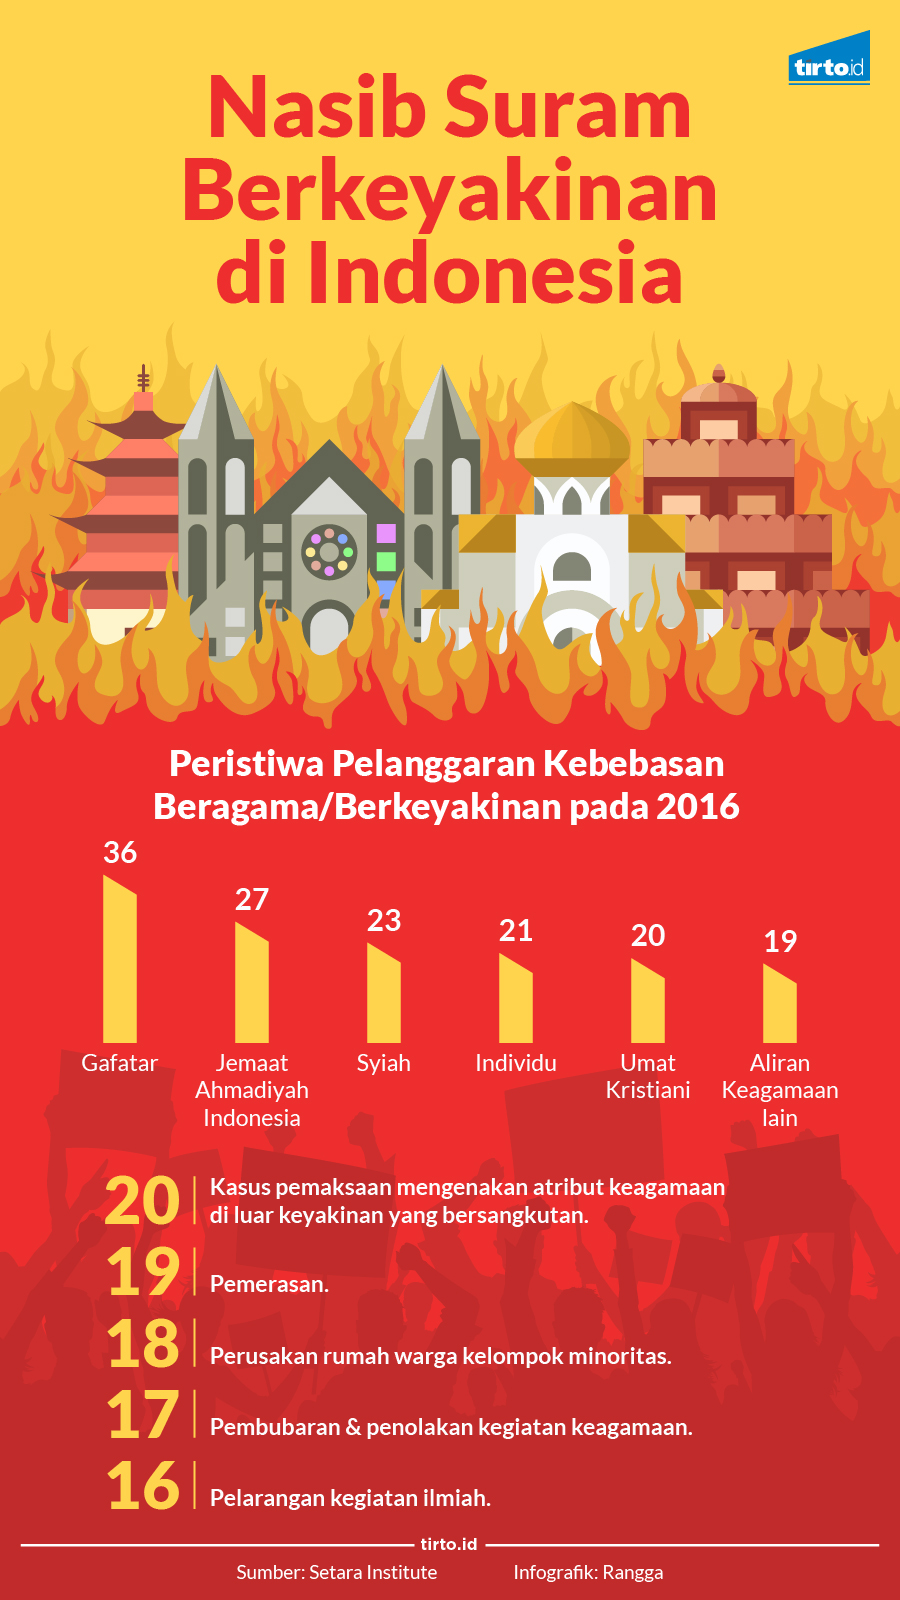 Nasib Suram Berkeyakinan di Indonesia